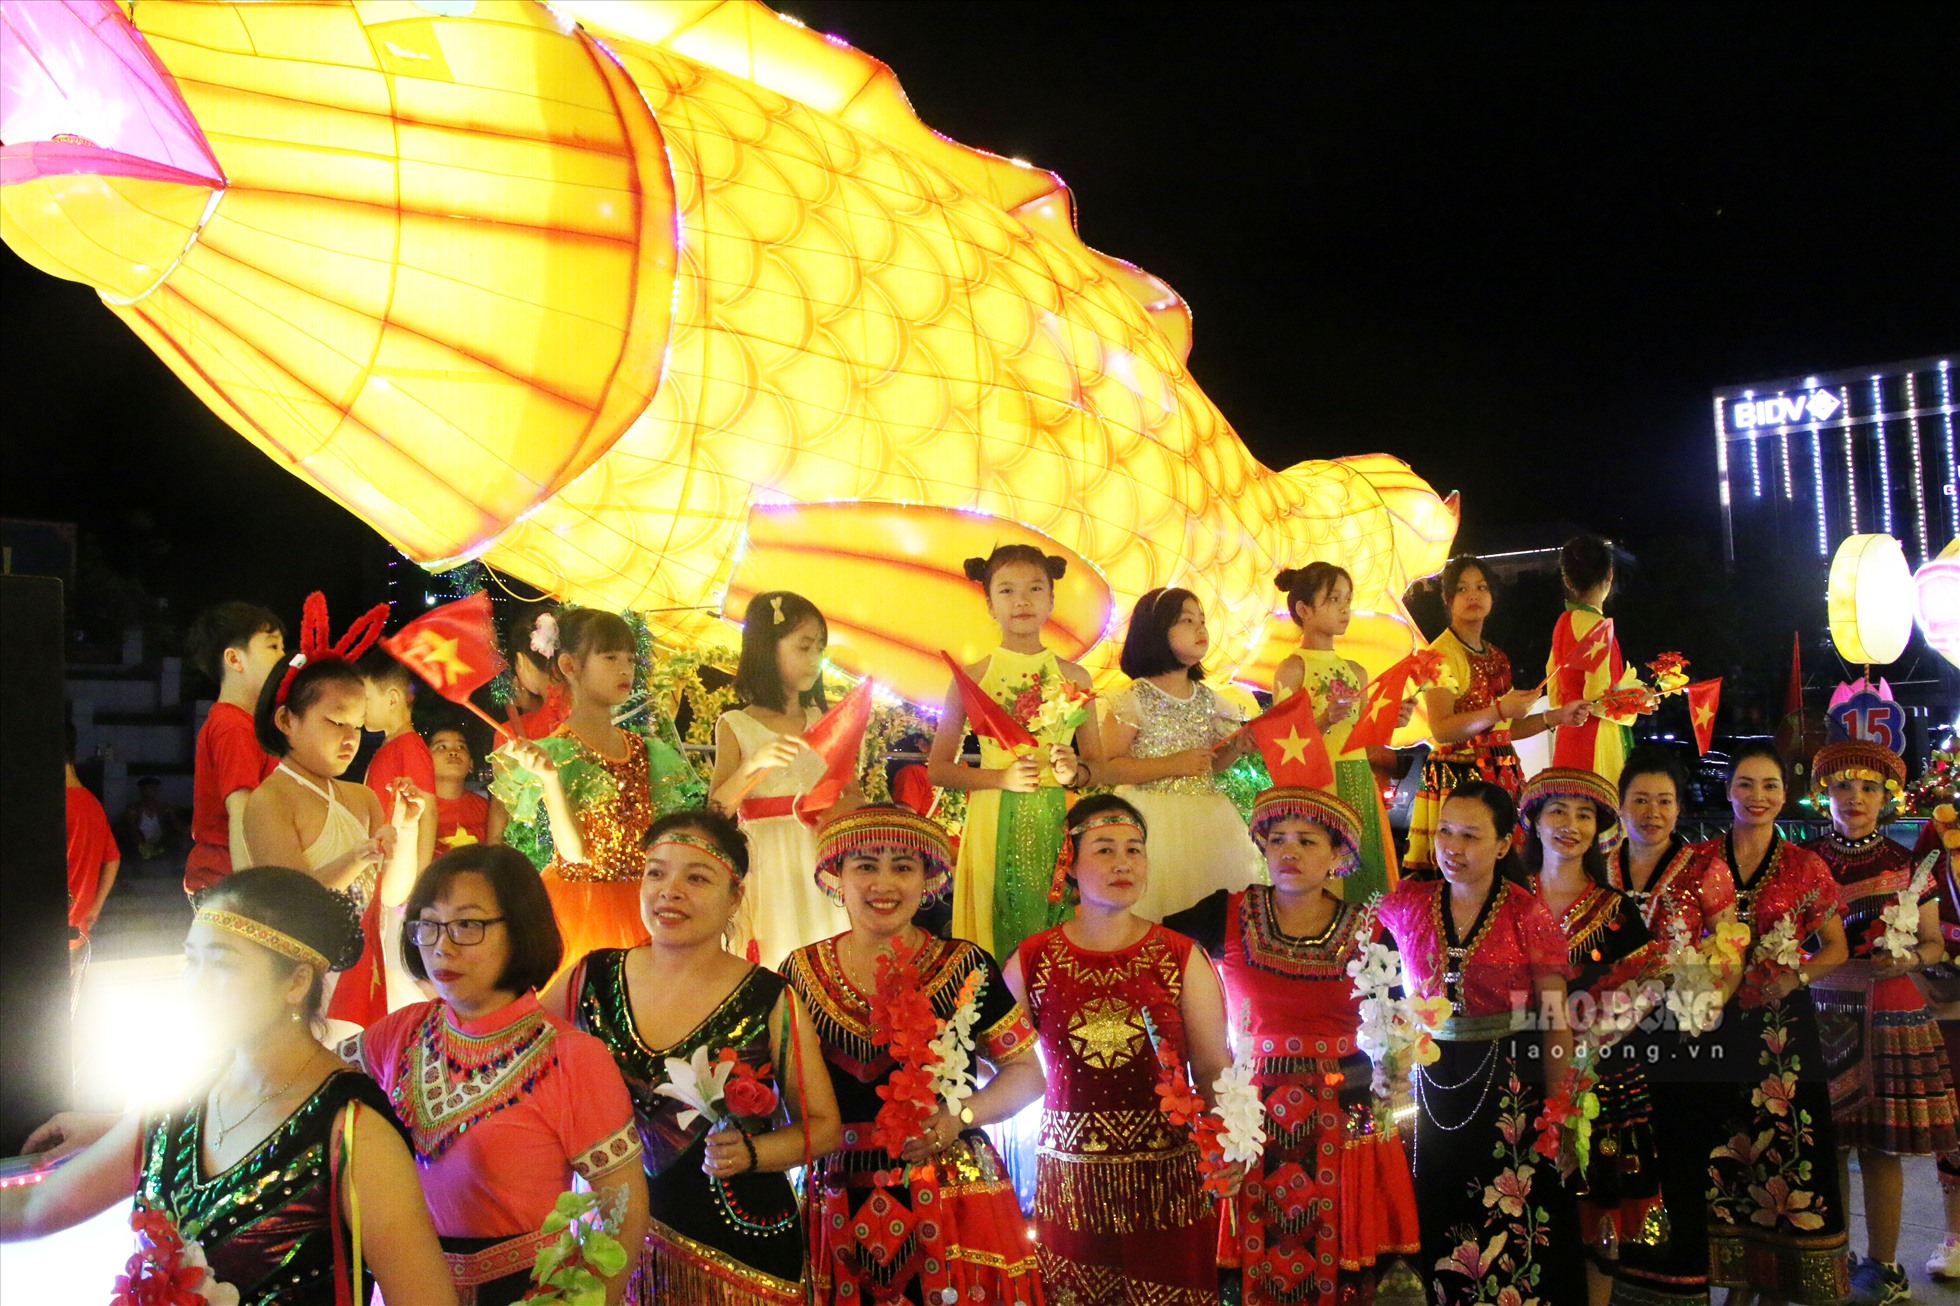 Đón trung thu bằng những mô hình đèn khổng lồ đã trở thành truyền thống của người dân Tuyên Quang. Từ người già đến người trẻ đều háo hức, hân hoan và chọn những bộ trang phục truyền thống để mặc trong đêm hội.